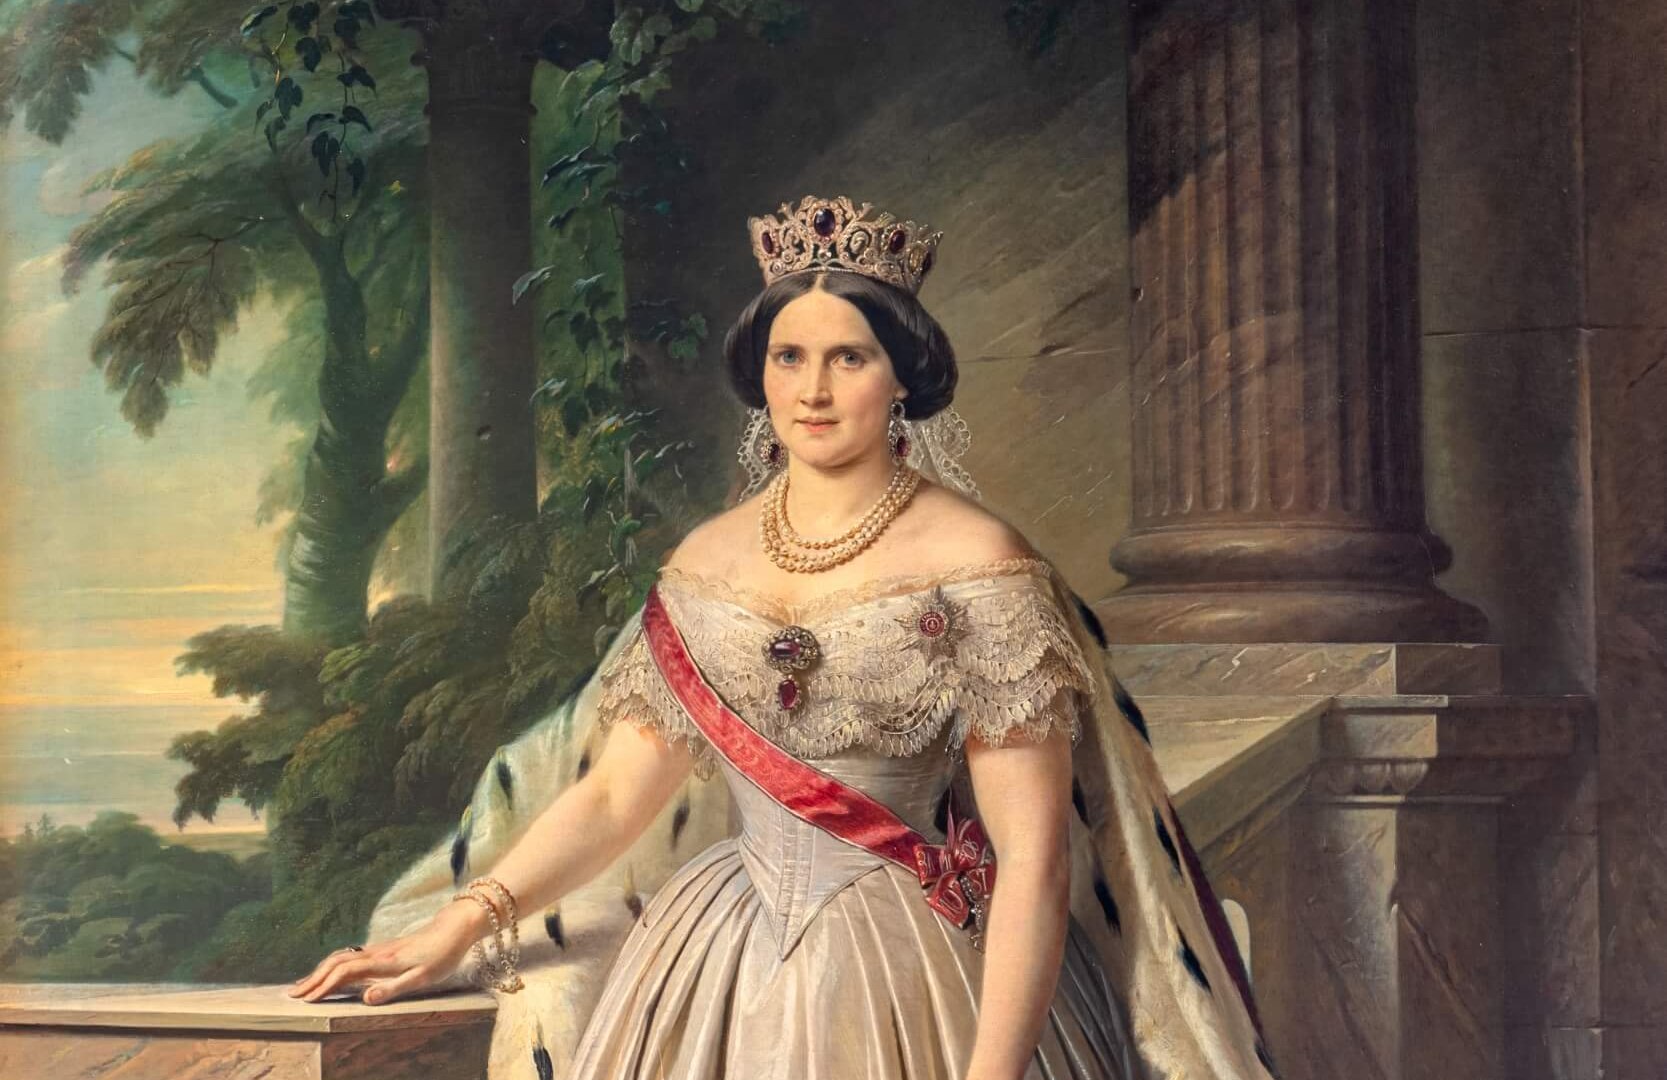 Großherzogin Auguste war die erste von insgesamt drei Ehefrauen des Großherzogs Friedrich Franz II. – sie starb jung, © TMV/Tiemann